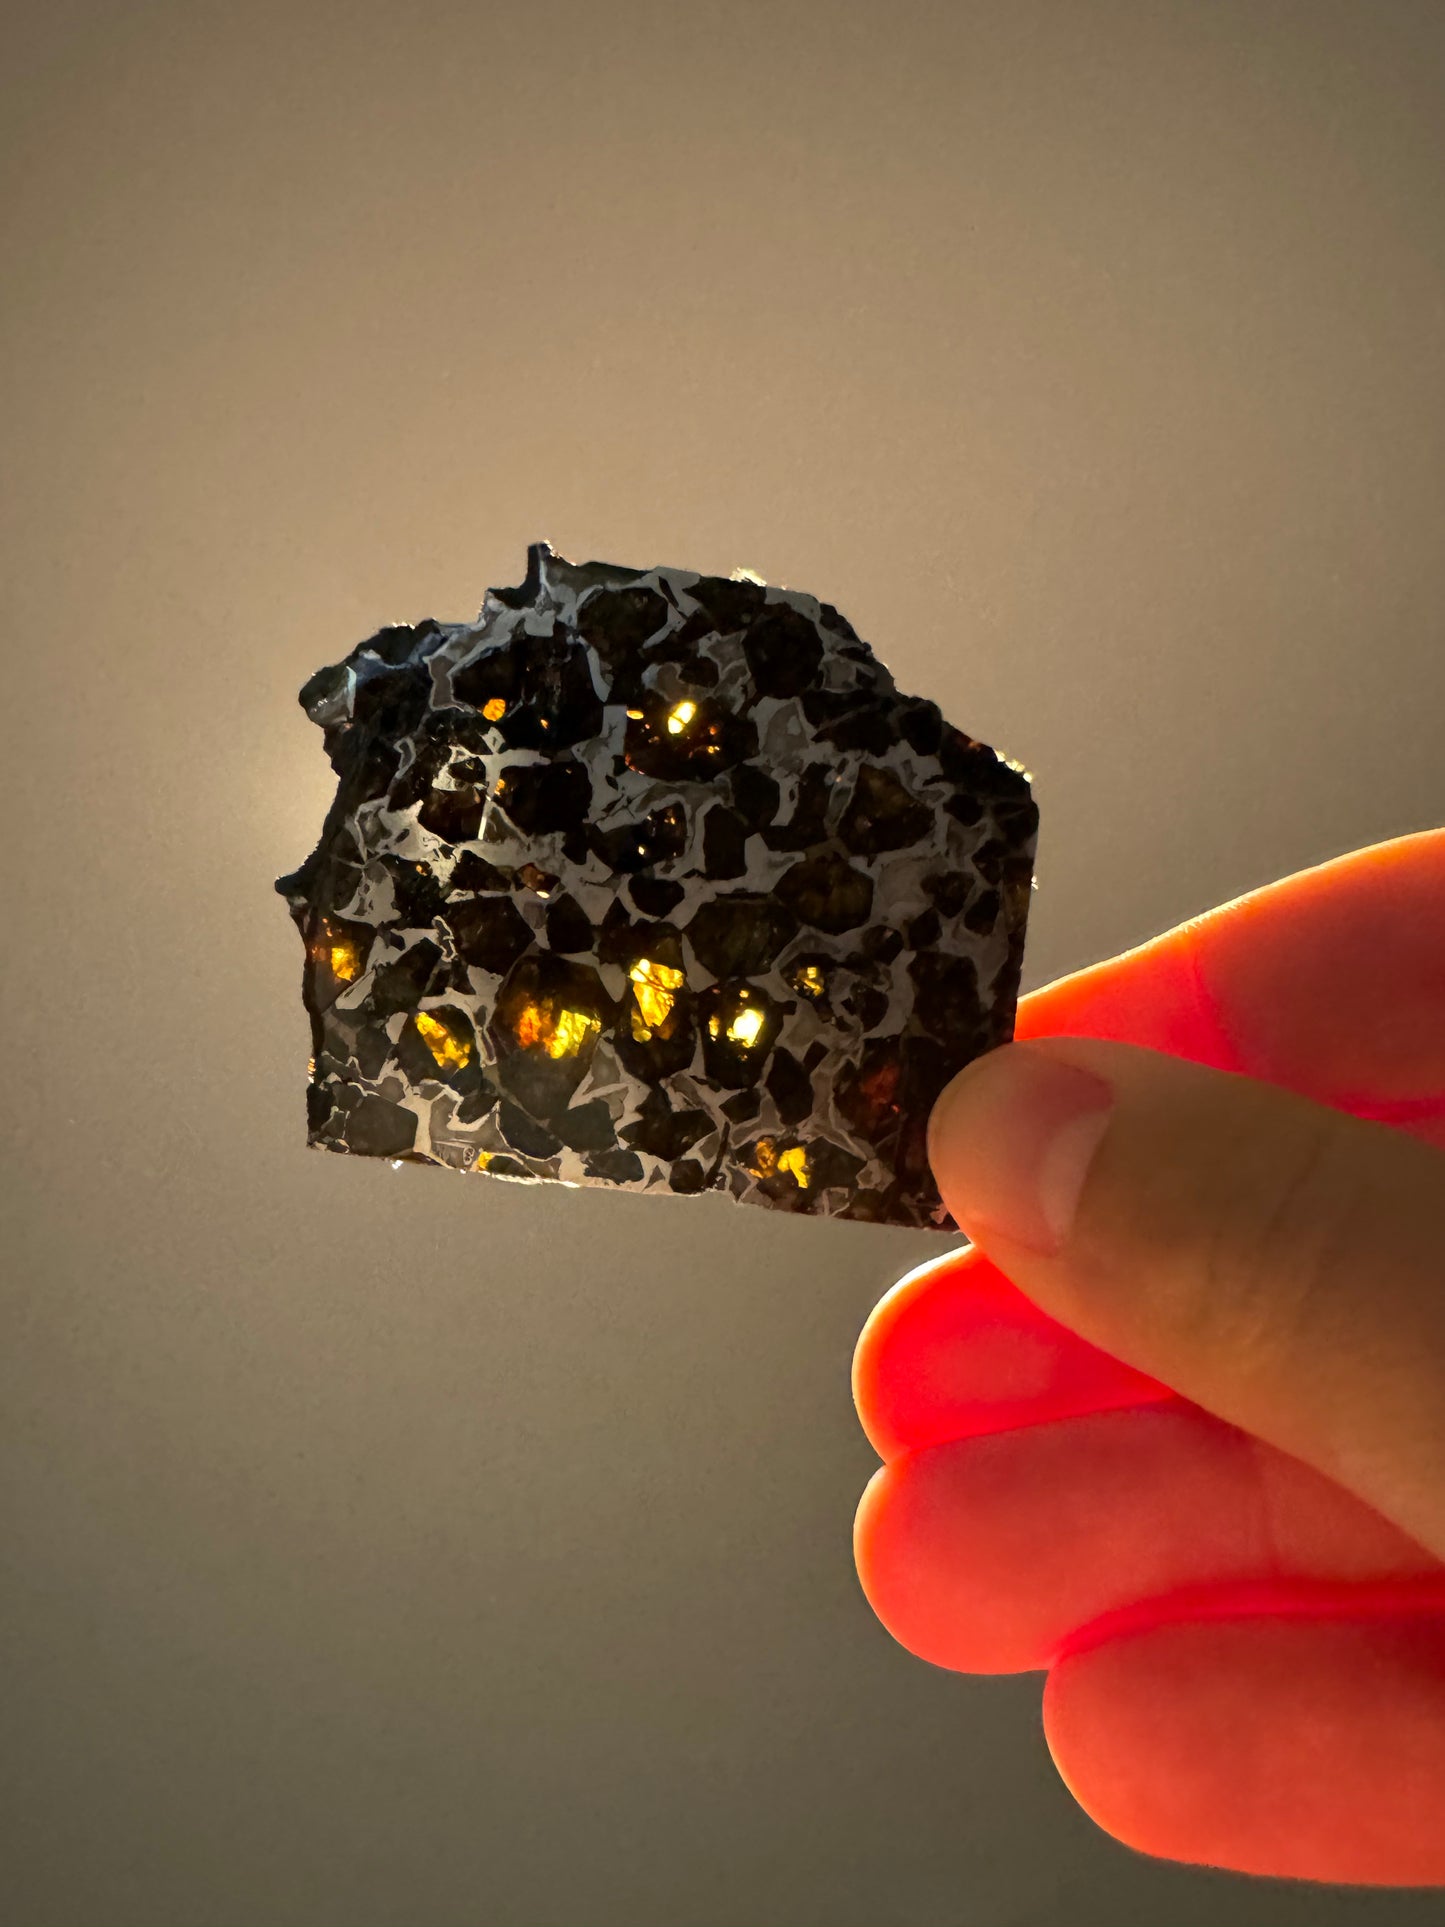 Brahin Pallasite Meteorite - 35.2g